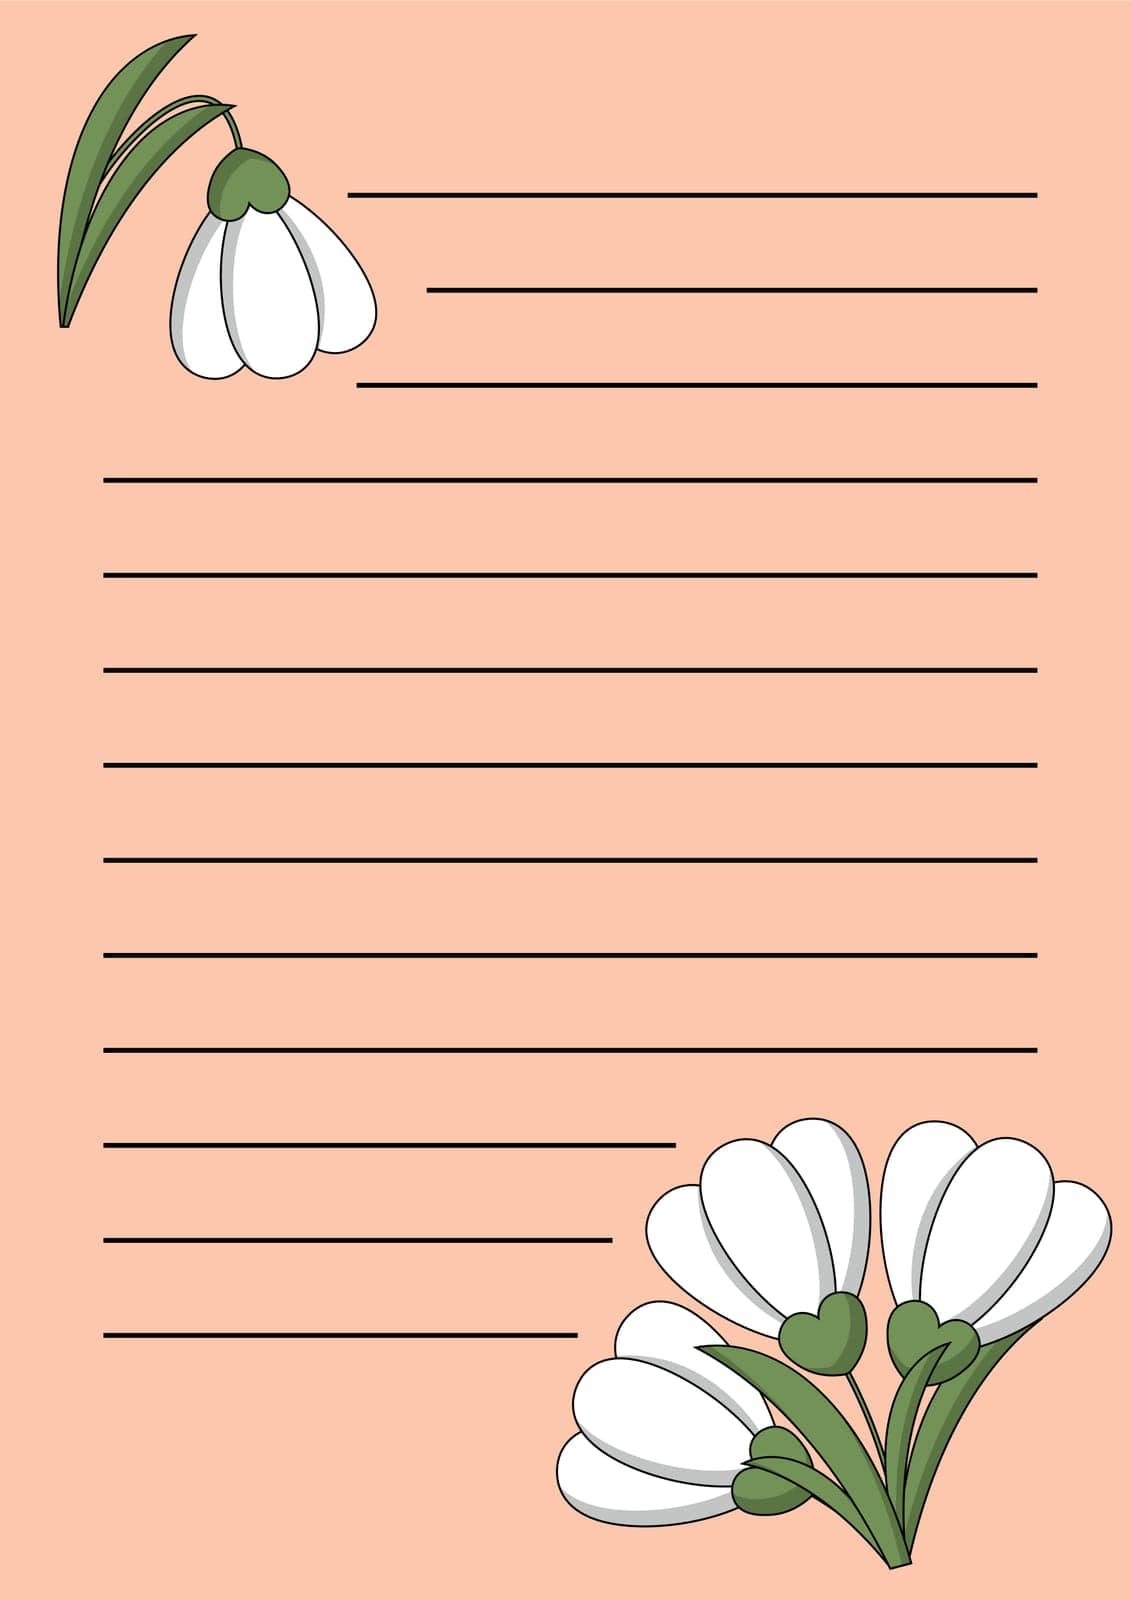 Planner Cheek list with flower snowdrop on pink background by AnastasiaPen